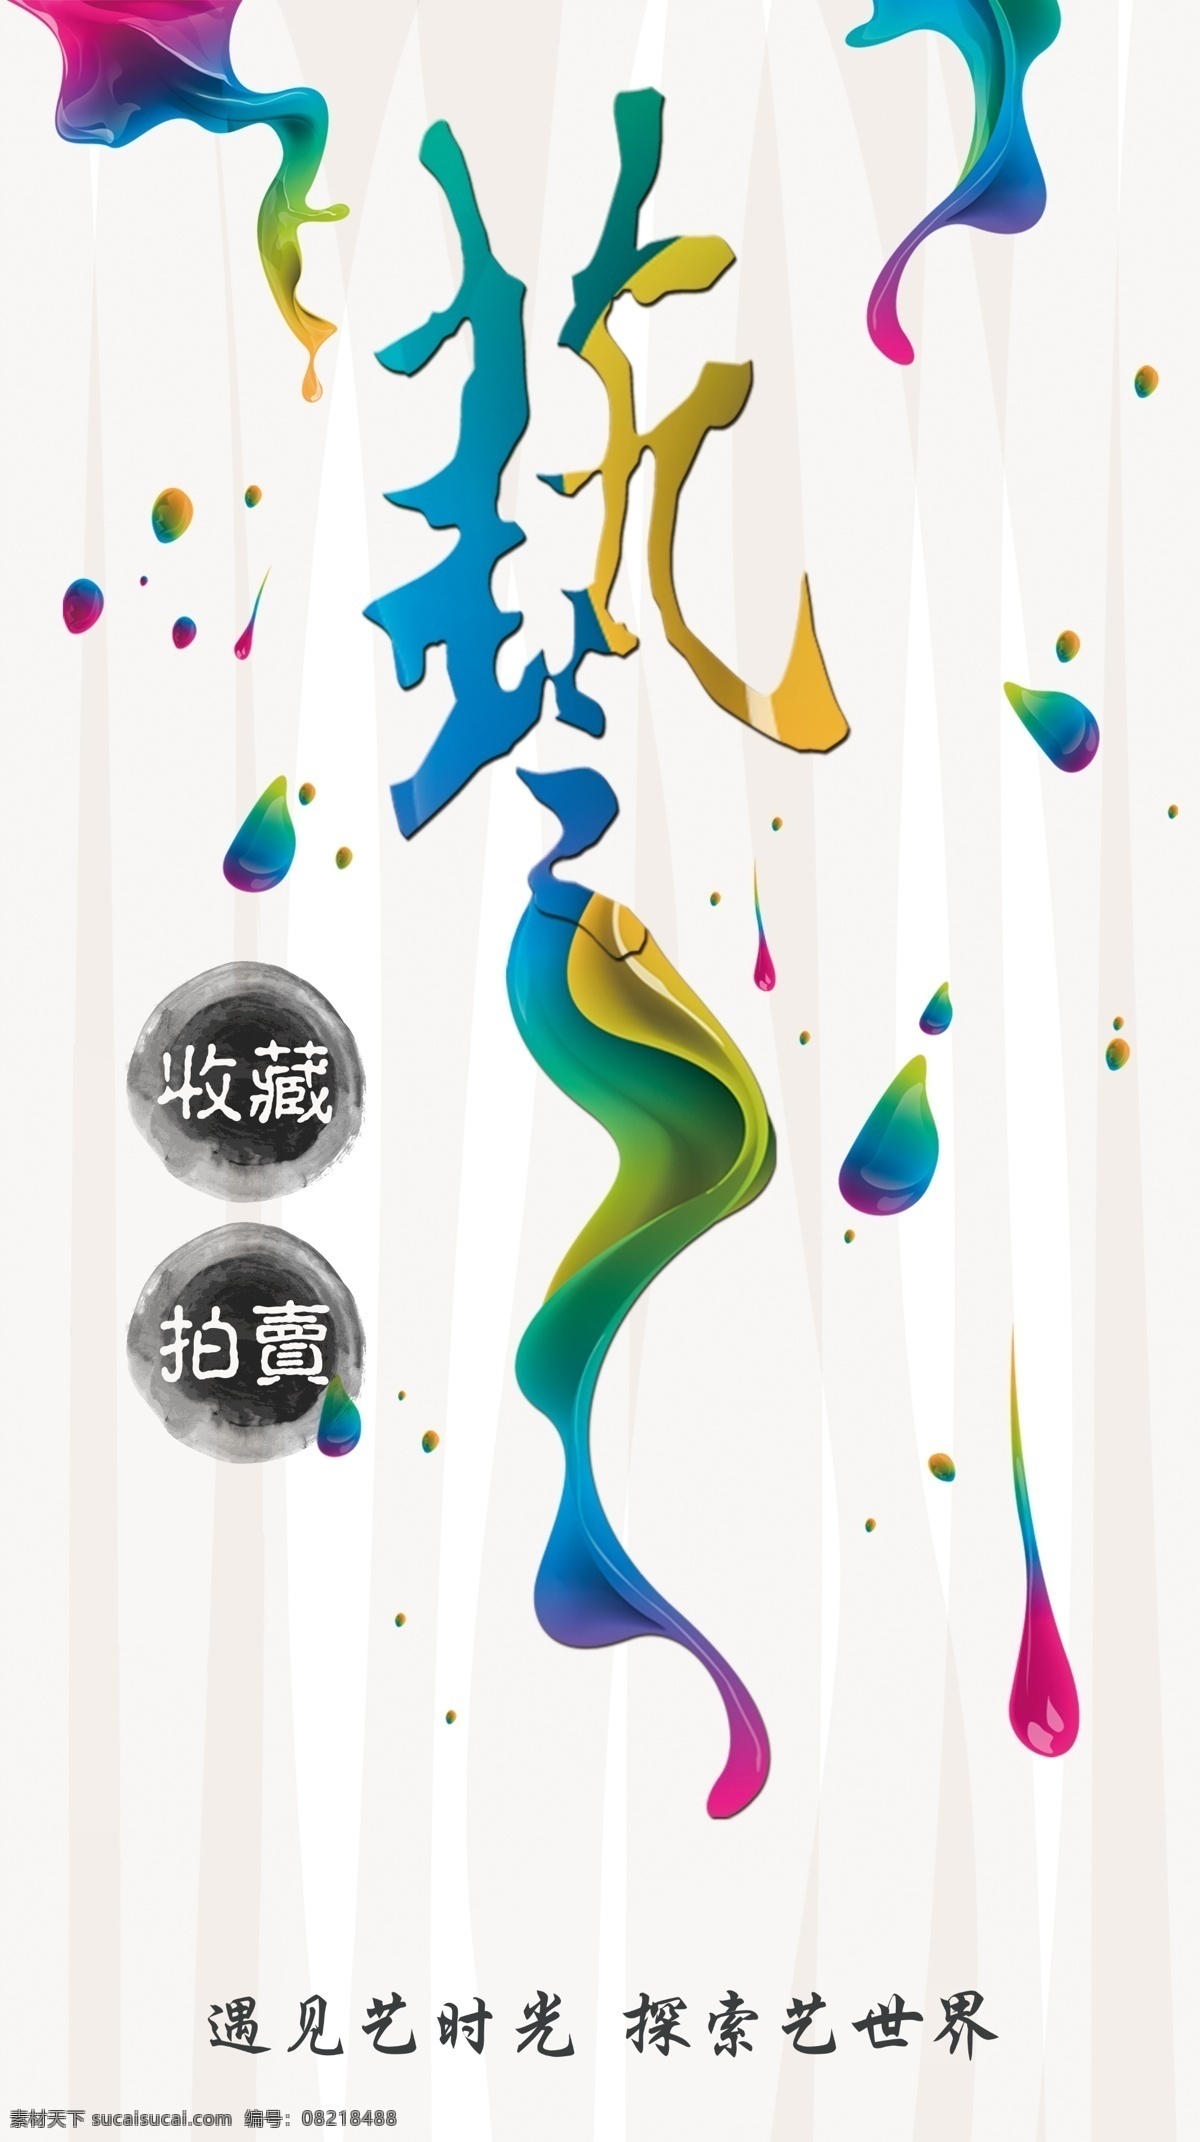 艺术节海报 艺术 拍卖 收藏 中国艺术节 创意海报 民间文化 展板 校园艺术节 校园活动 文化 文化节 海报类